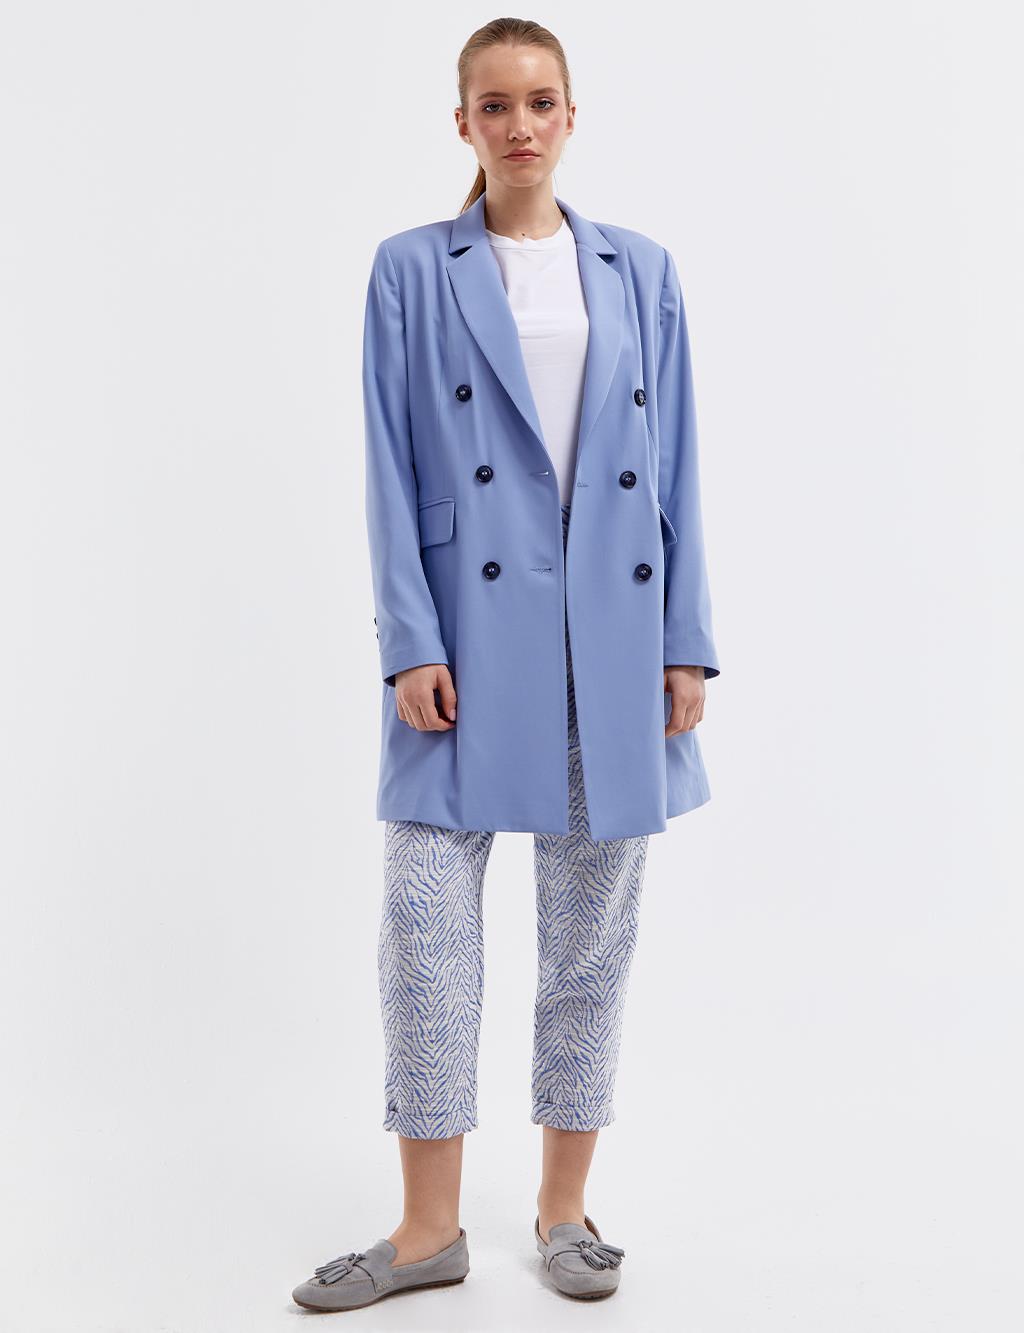 Базовый пиджак-пиджак Небесно-голубой Kayra пиджак opinion базовый 44 размер